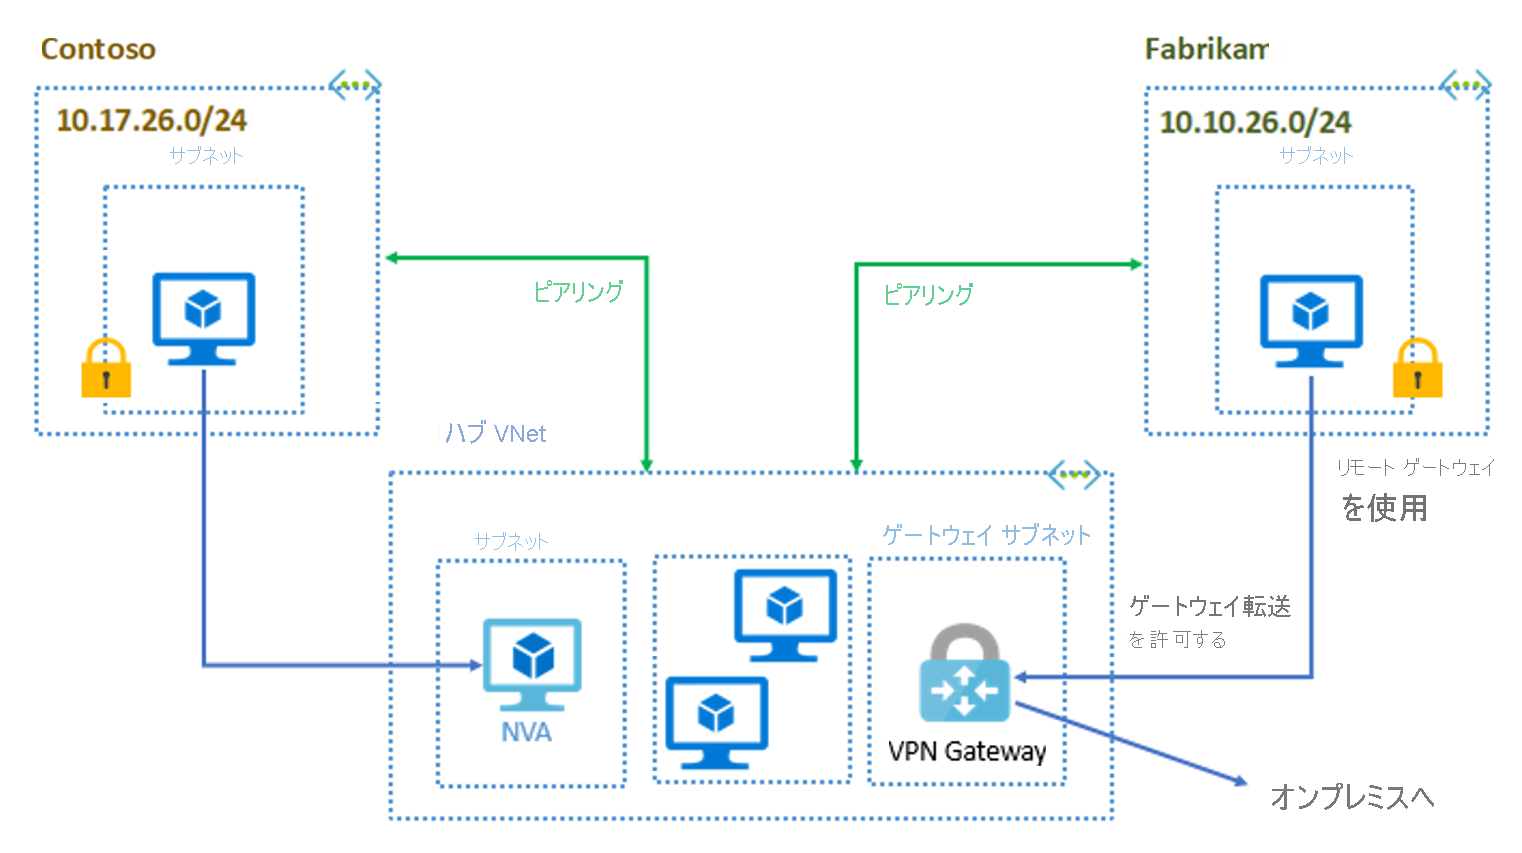 ハブとスポークの構成 - Contoso と Fabrikam は、ハブ VNet とピアリングされています。ハブ VNet には、NVA、VM、オンプレミス ネットワークに接続された VPN Gateway が含まれています。